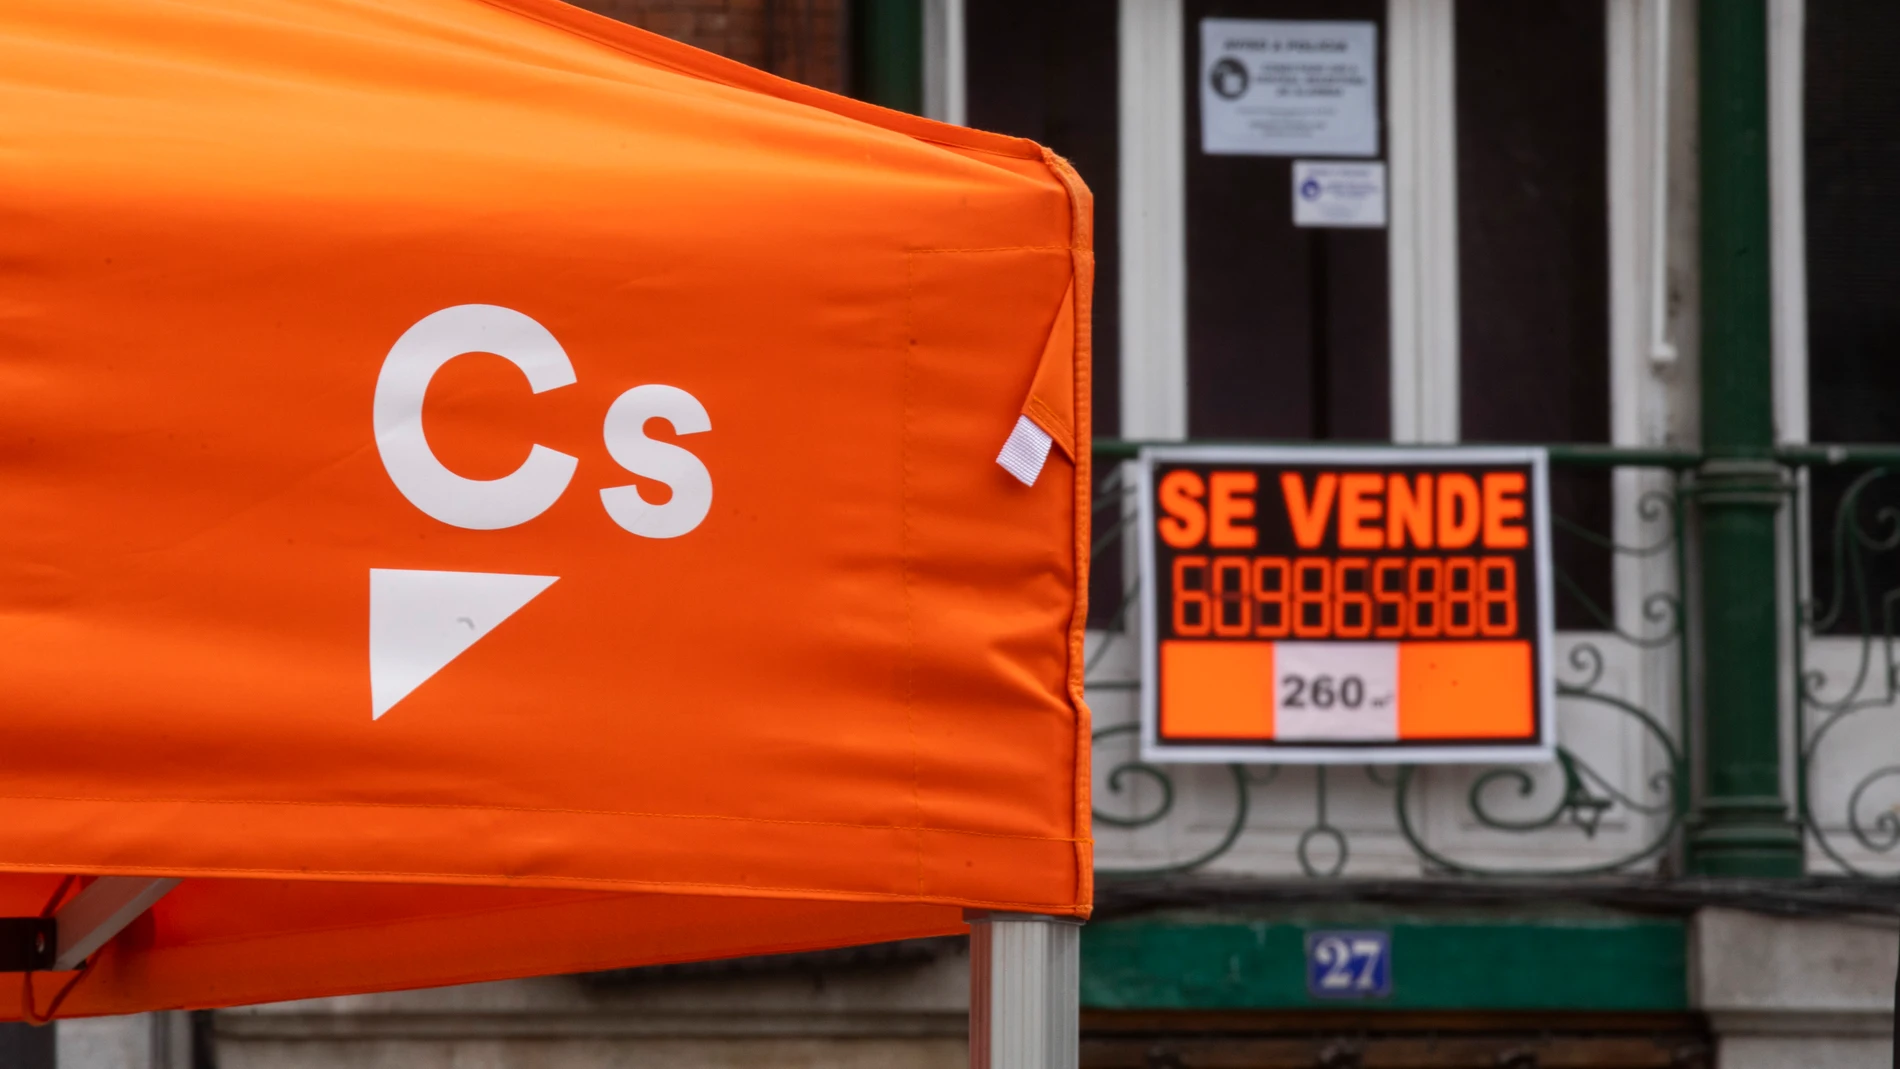 Imagen de una carpa electoral de Ciudadanos con un cartel de Se Vende al fondo